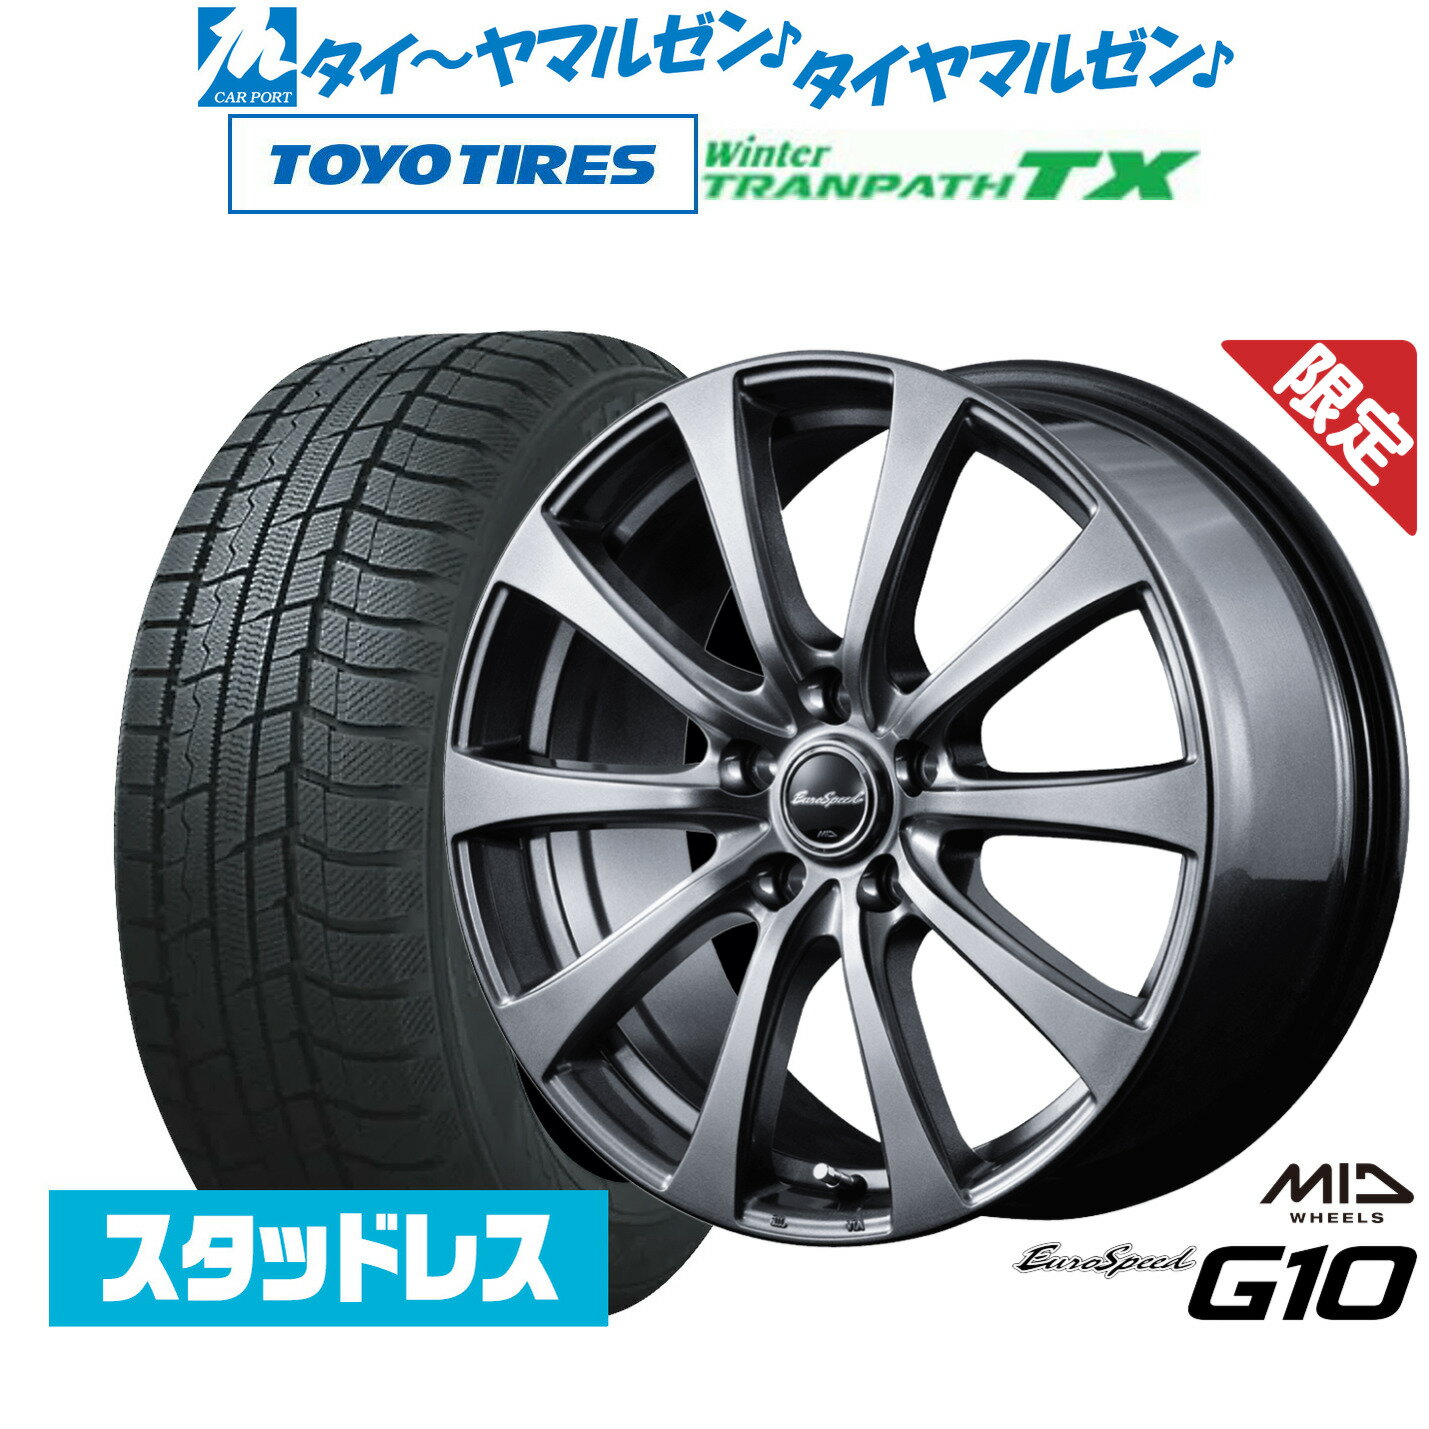 【数量限定】新品 スタッドレスタイヤ ホイール4本セットMID ユーロスピード G-1016インチ 6.5Jトーヨータイヤ ウィンタートランパス TX215/65R16